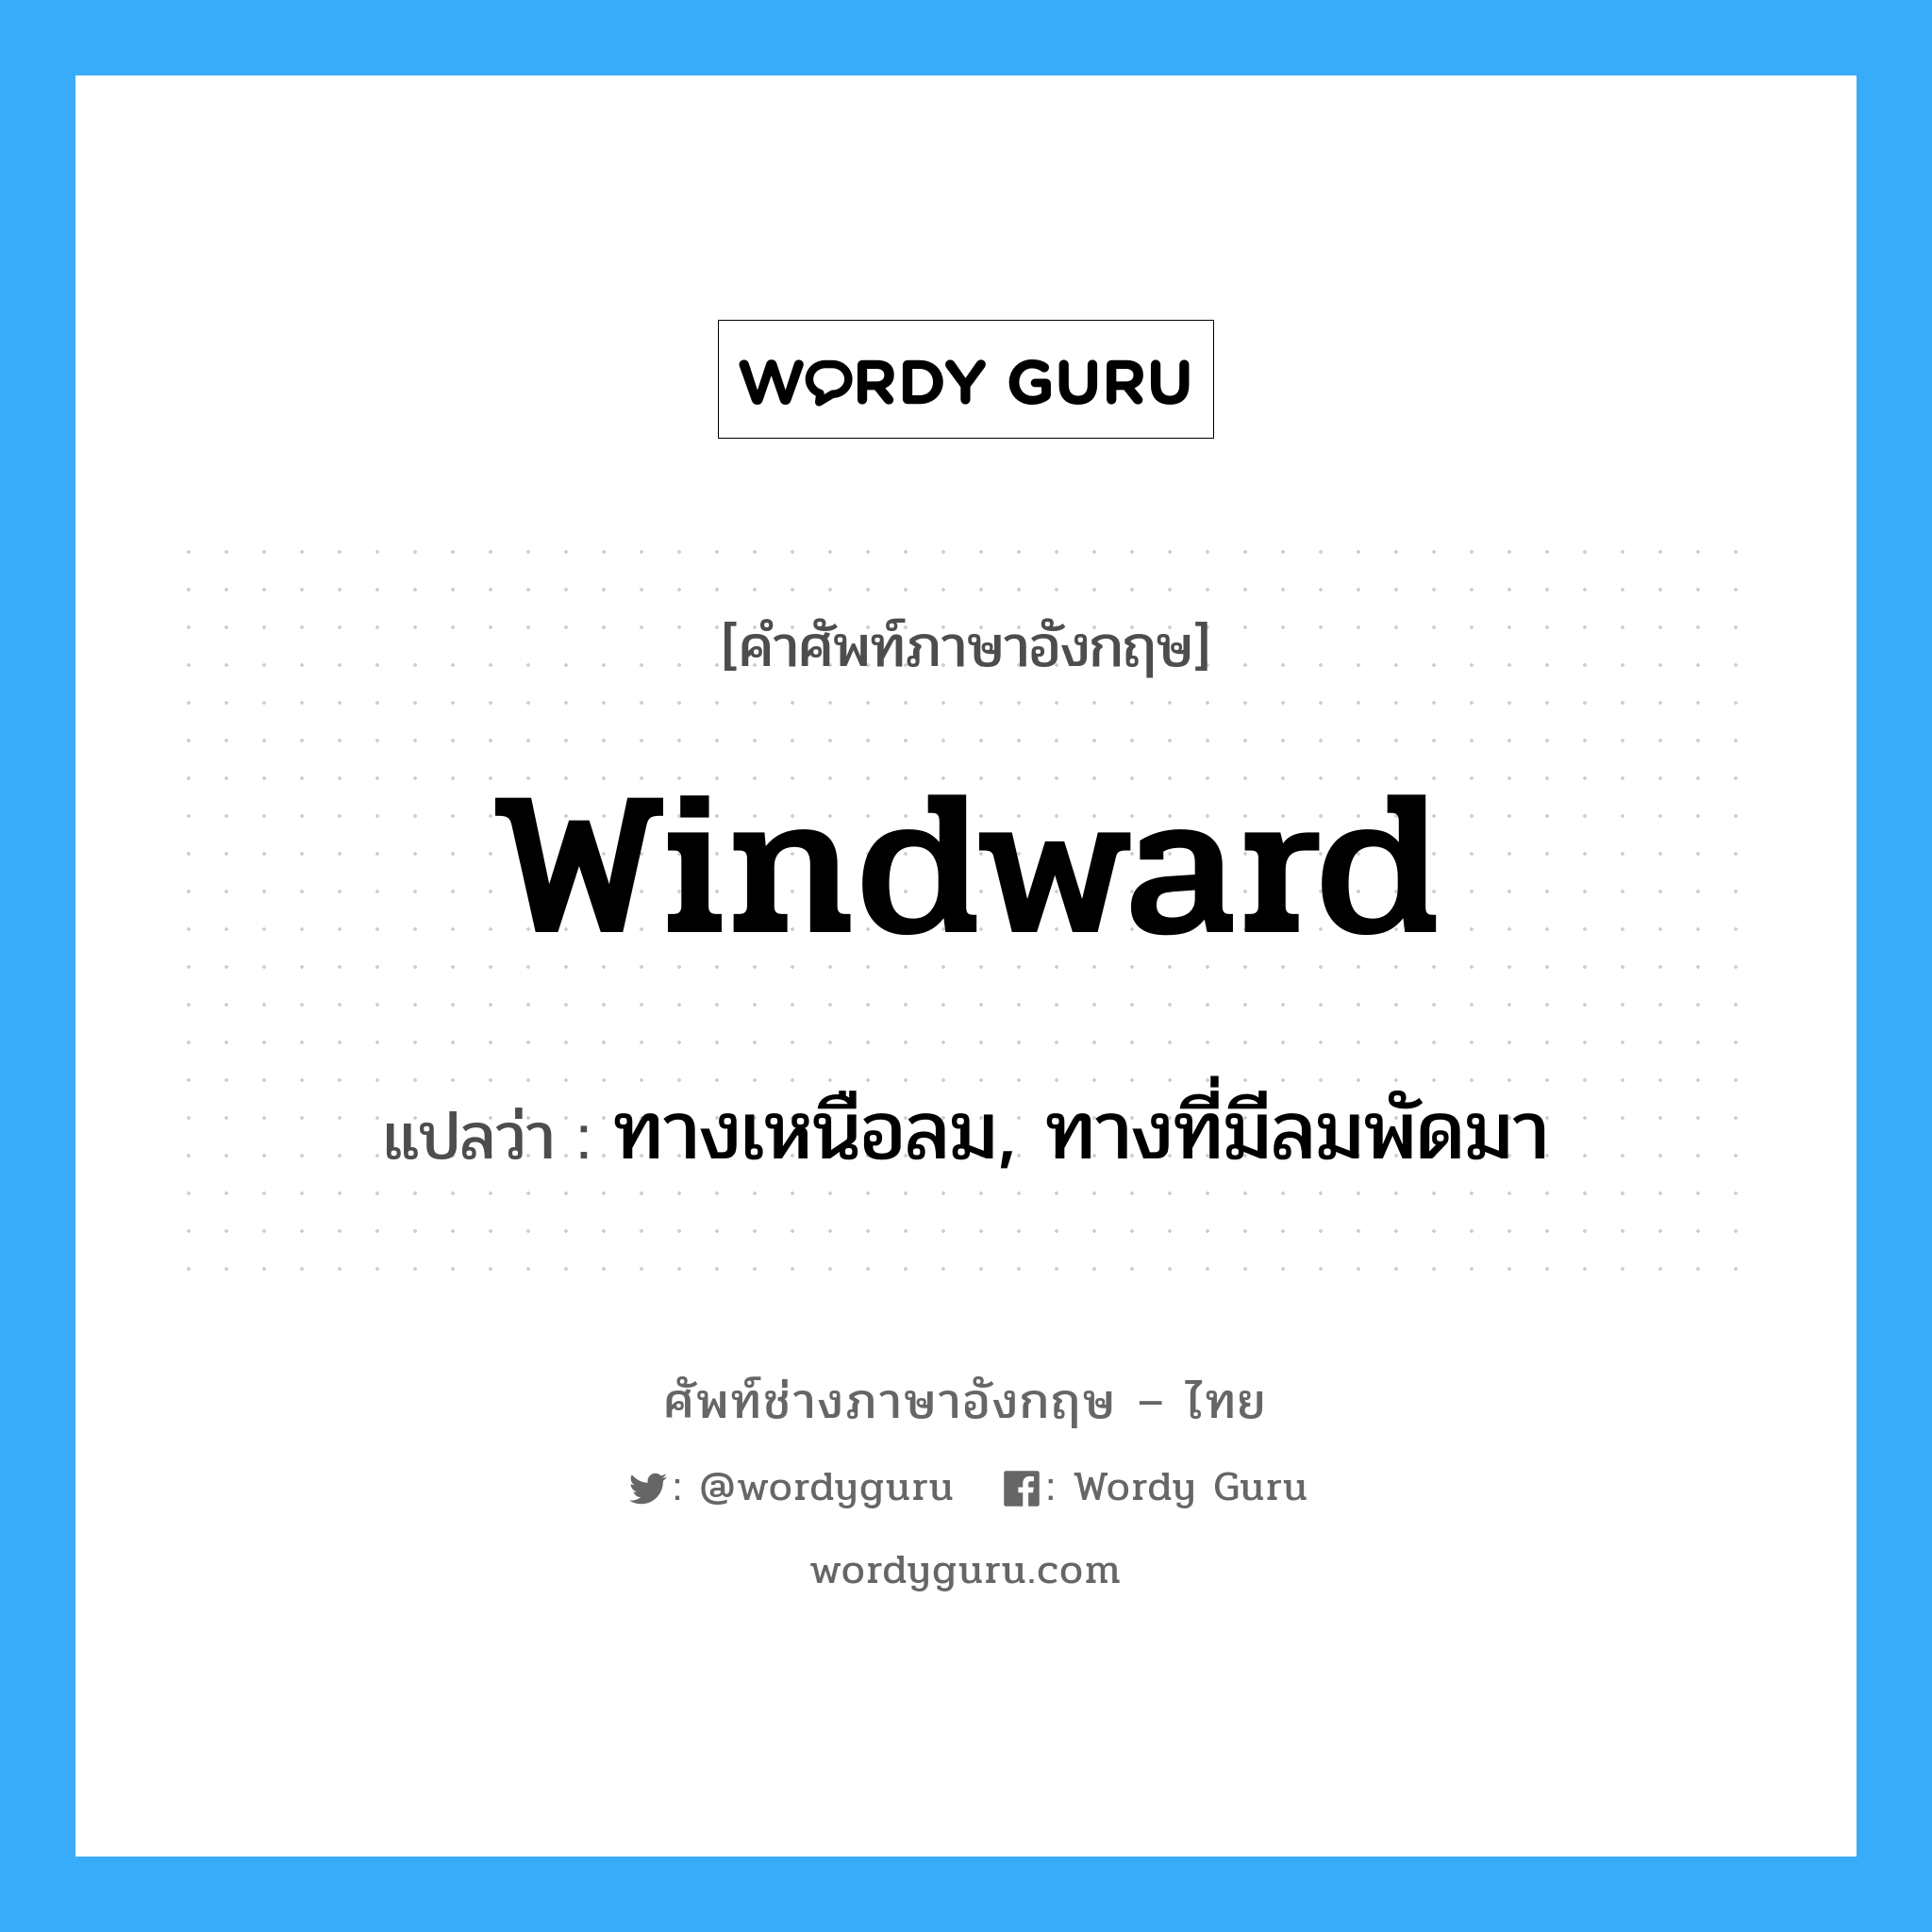 windward แปลว่า?, คำศัพท์ช่างภาษาอังกฤษ - ไทย windward คำศัพท์ภาษาอังกฤษ windward แปลว่า ทางเหนือลม, ทางที่มีลมพัดมา